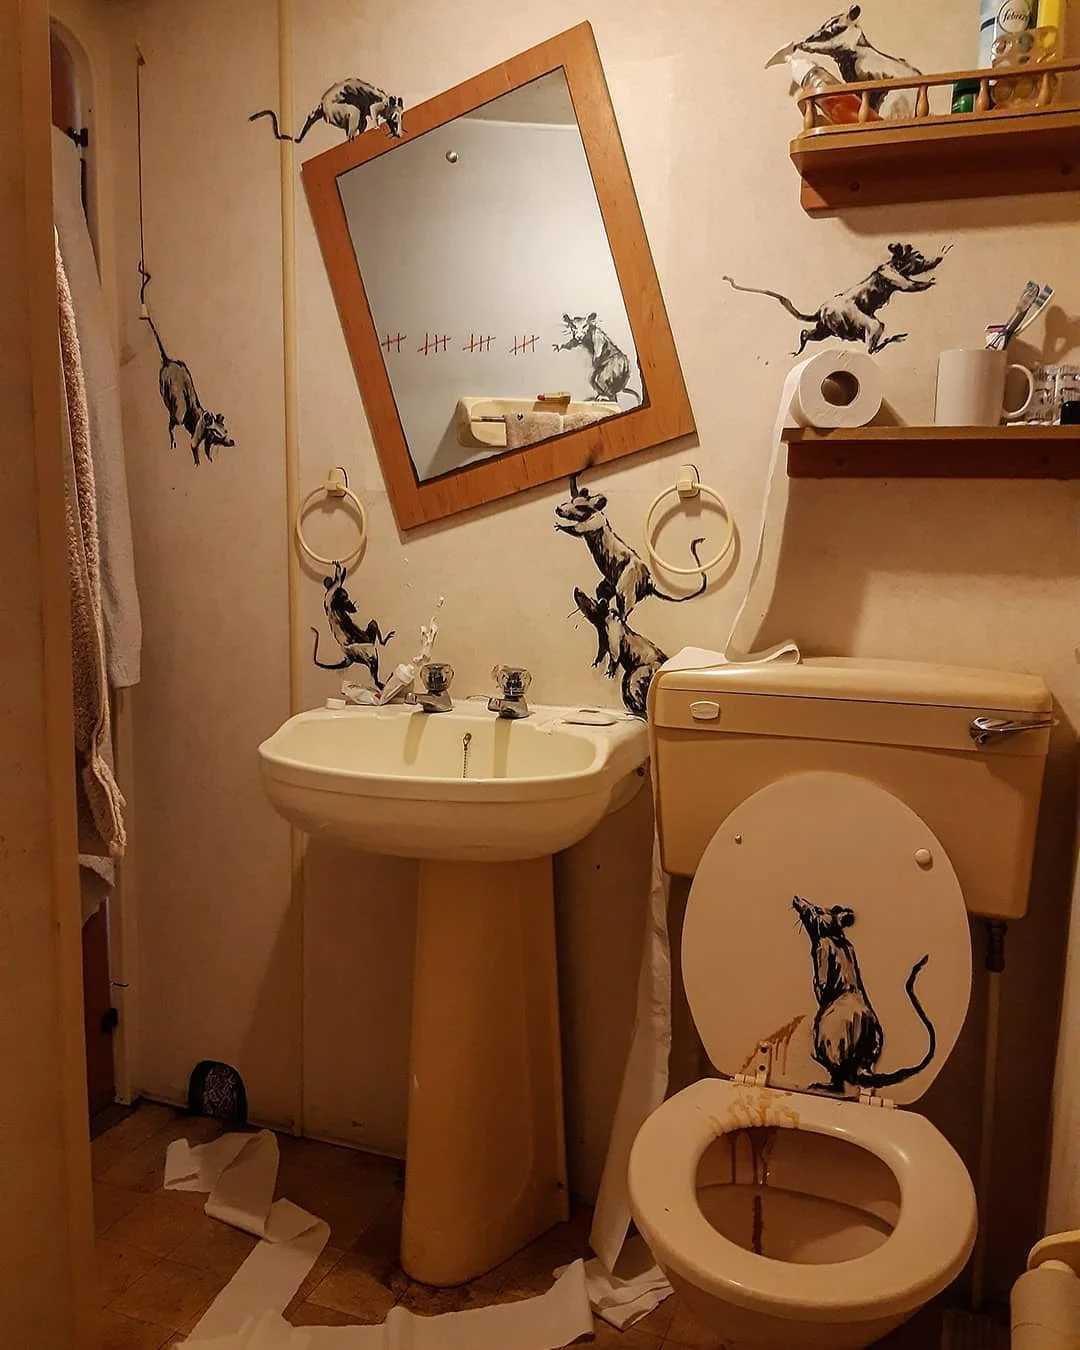 Бэнкси создал новую трешовую инсталляцию в собственном туалете - фото 475366